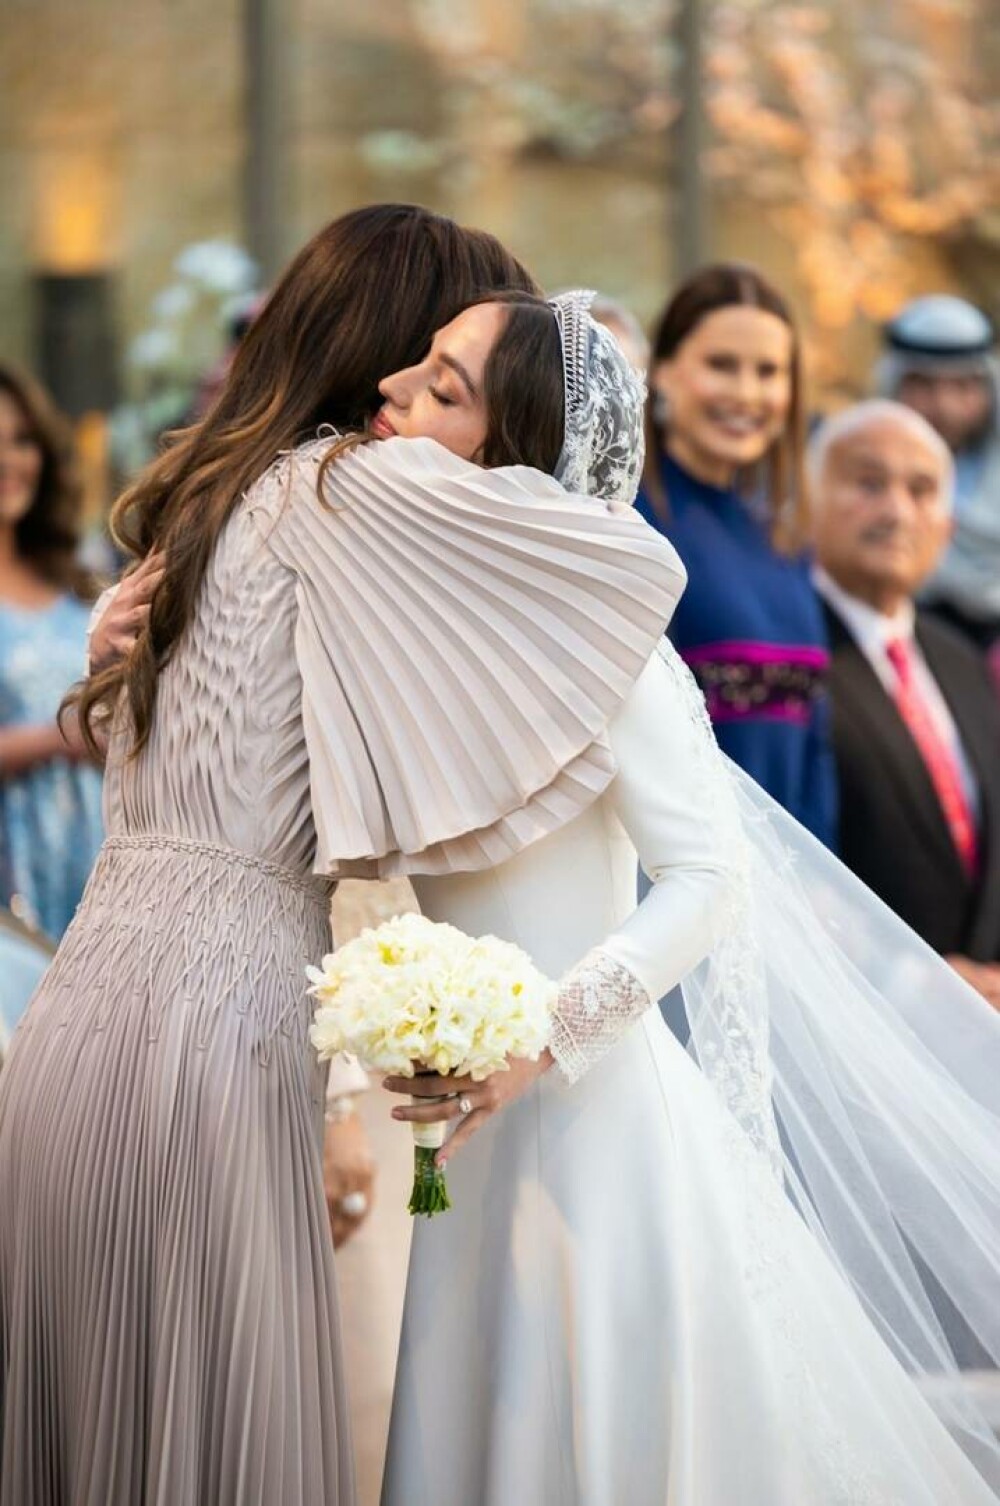 Prințesa Iman a Iordaniei s-a căsătorit cu un finanțist de origine greacă. Imaginile sunt spectaculoase GALERIE FOTO & VIDEO - Imaginea 7